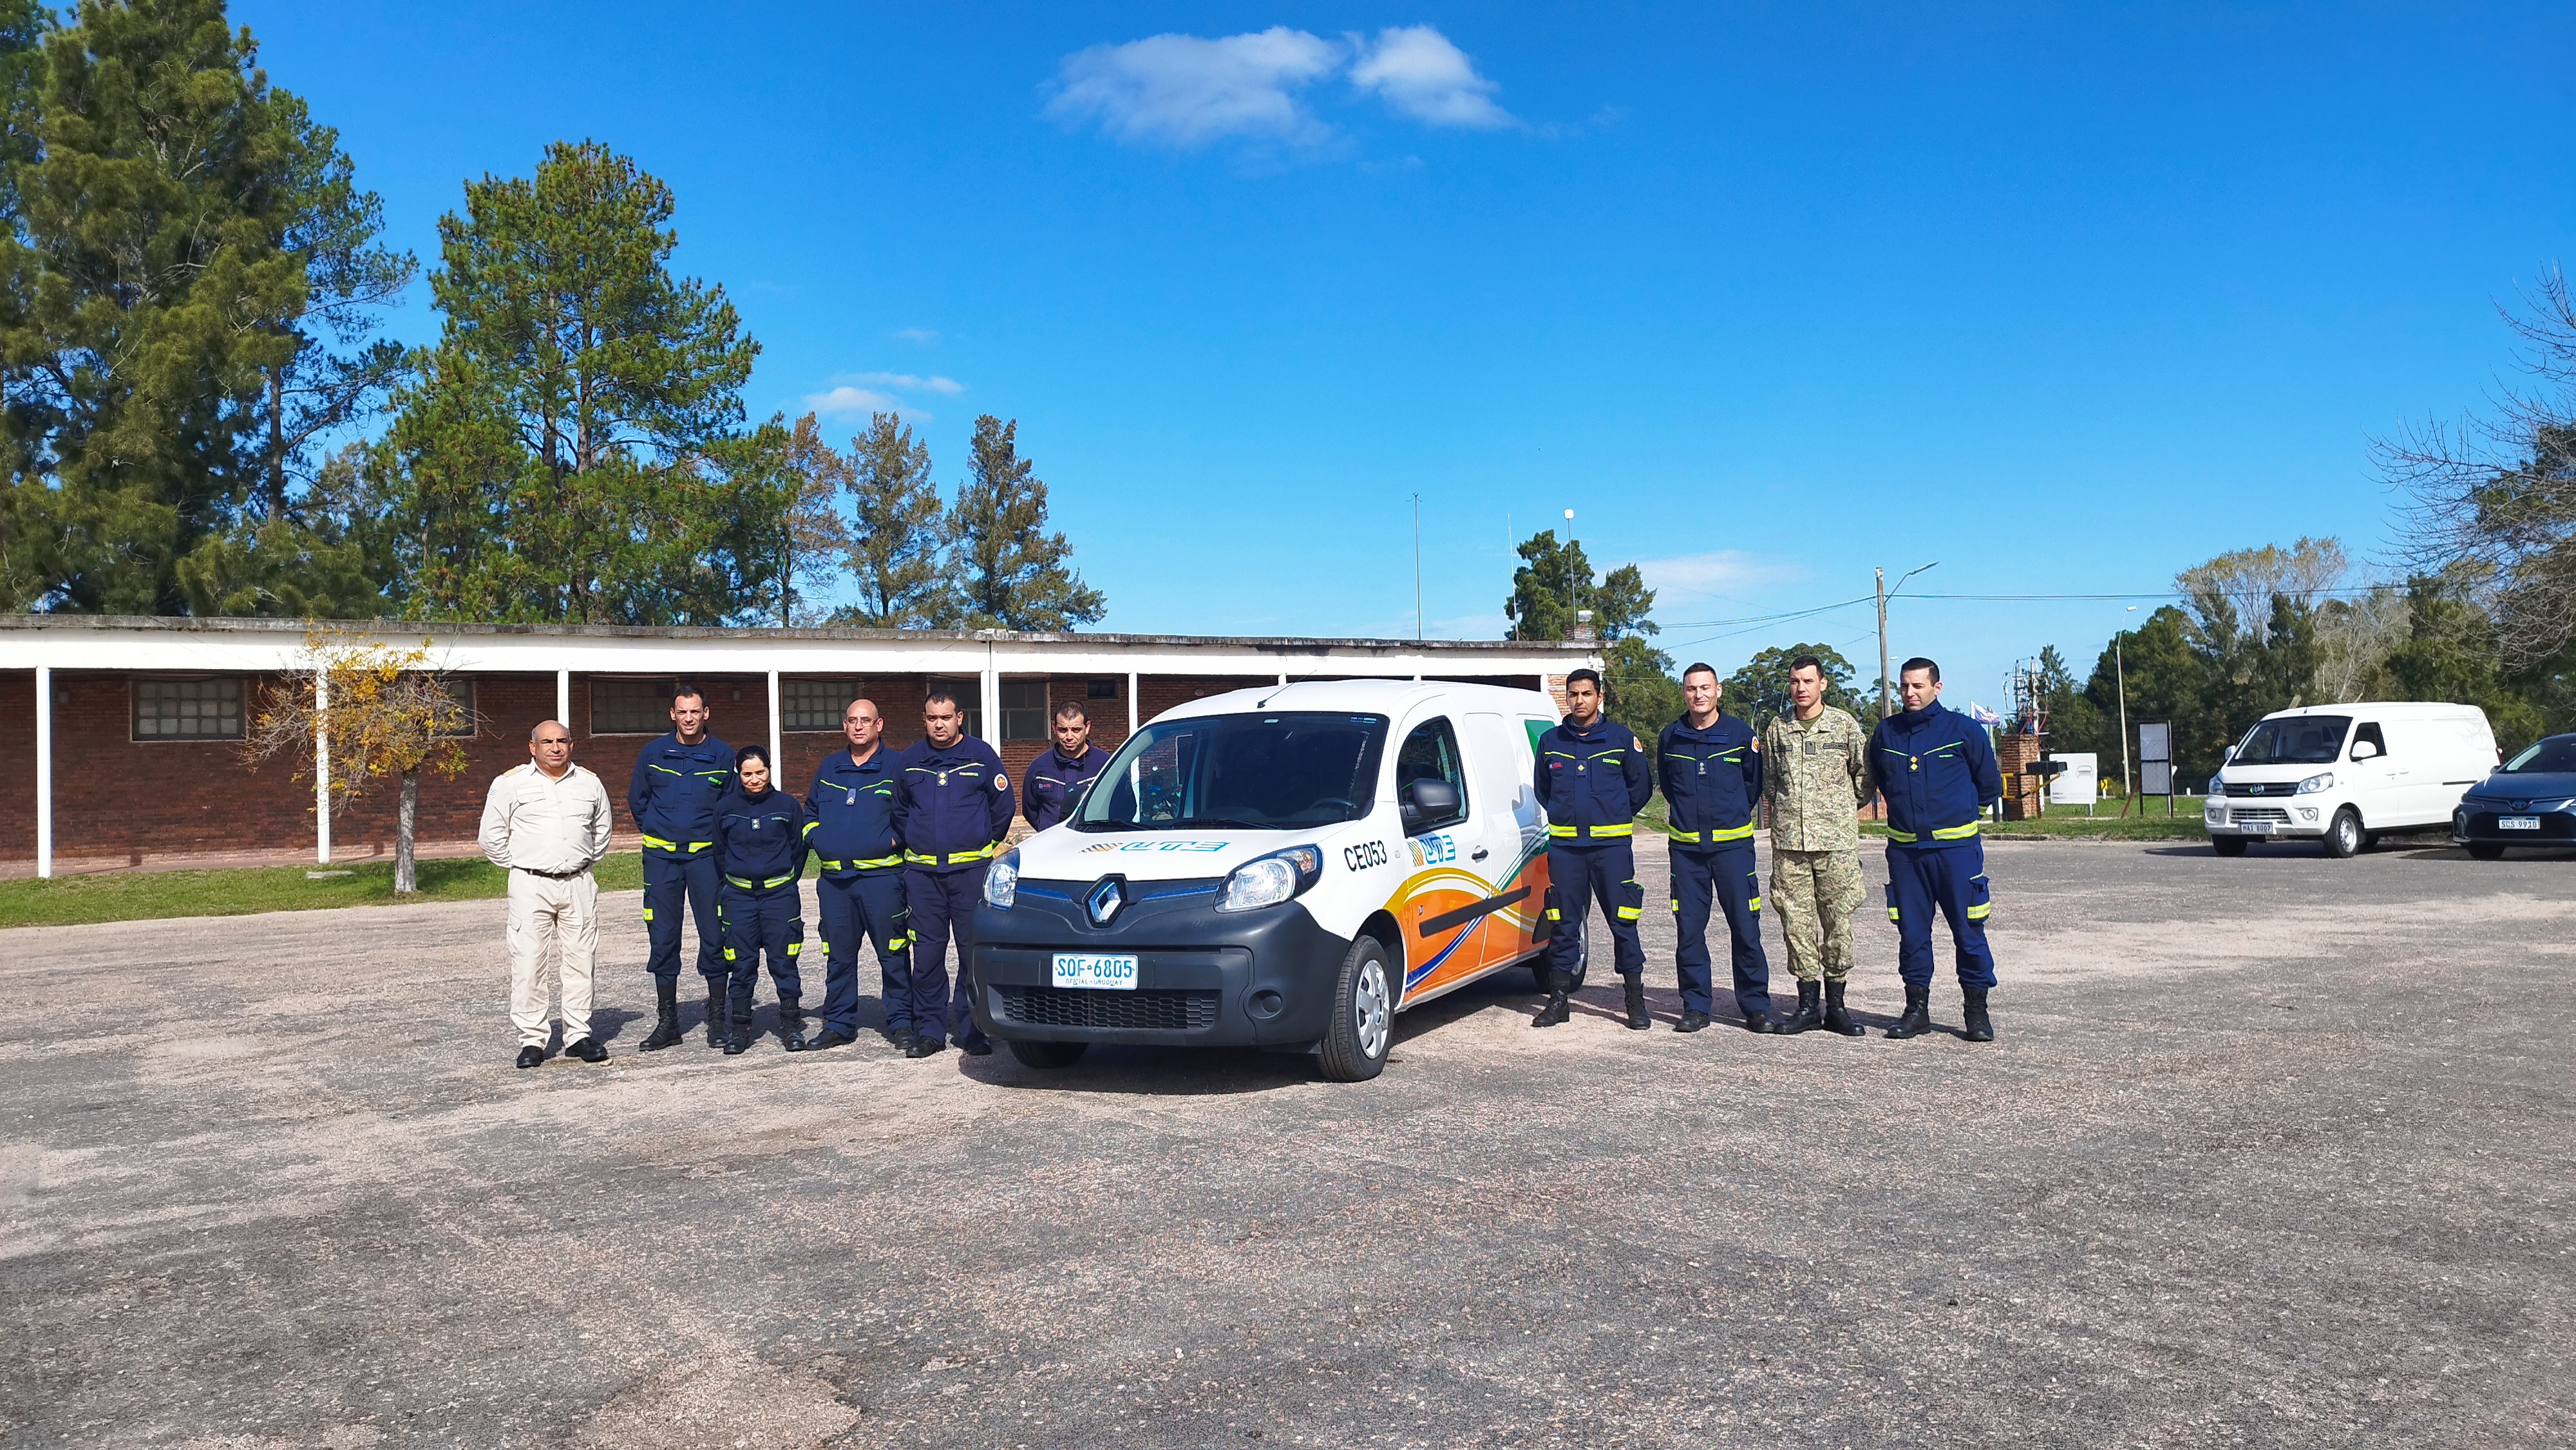 IMG_20230511_132828.jpg - El pasado jueves 11 de mayo culminó la &#034;Capacitación para bomberos sobre manejo de incidentes relacionados con la movilidad eléctrica&#034; en donde se capacitaron a 25 bomberos en la Base Aérea de Santa Bernardina del departamento de Durazno. Esta capacitación es la continuación del primer curso regional que organizó la plataforma MOVE del Programa de la Naciones Unidas para el Medio Ambiente a finales de 2022 en Paraguay, donde participaron y se formaron dos bomberos instructores de Uruguay.